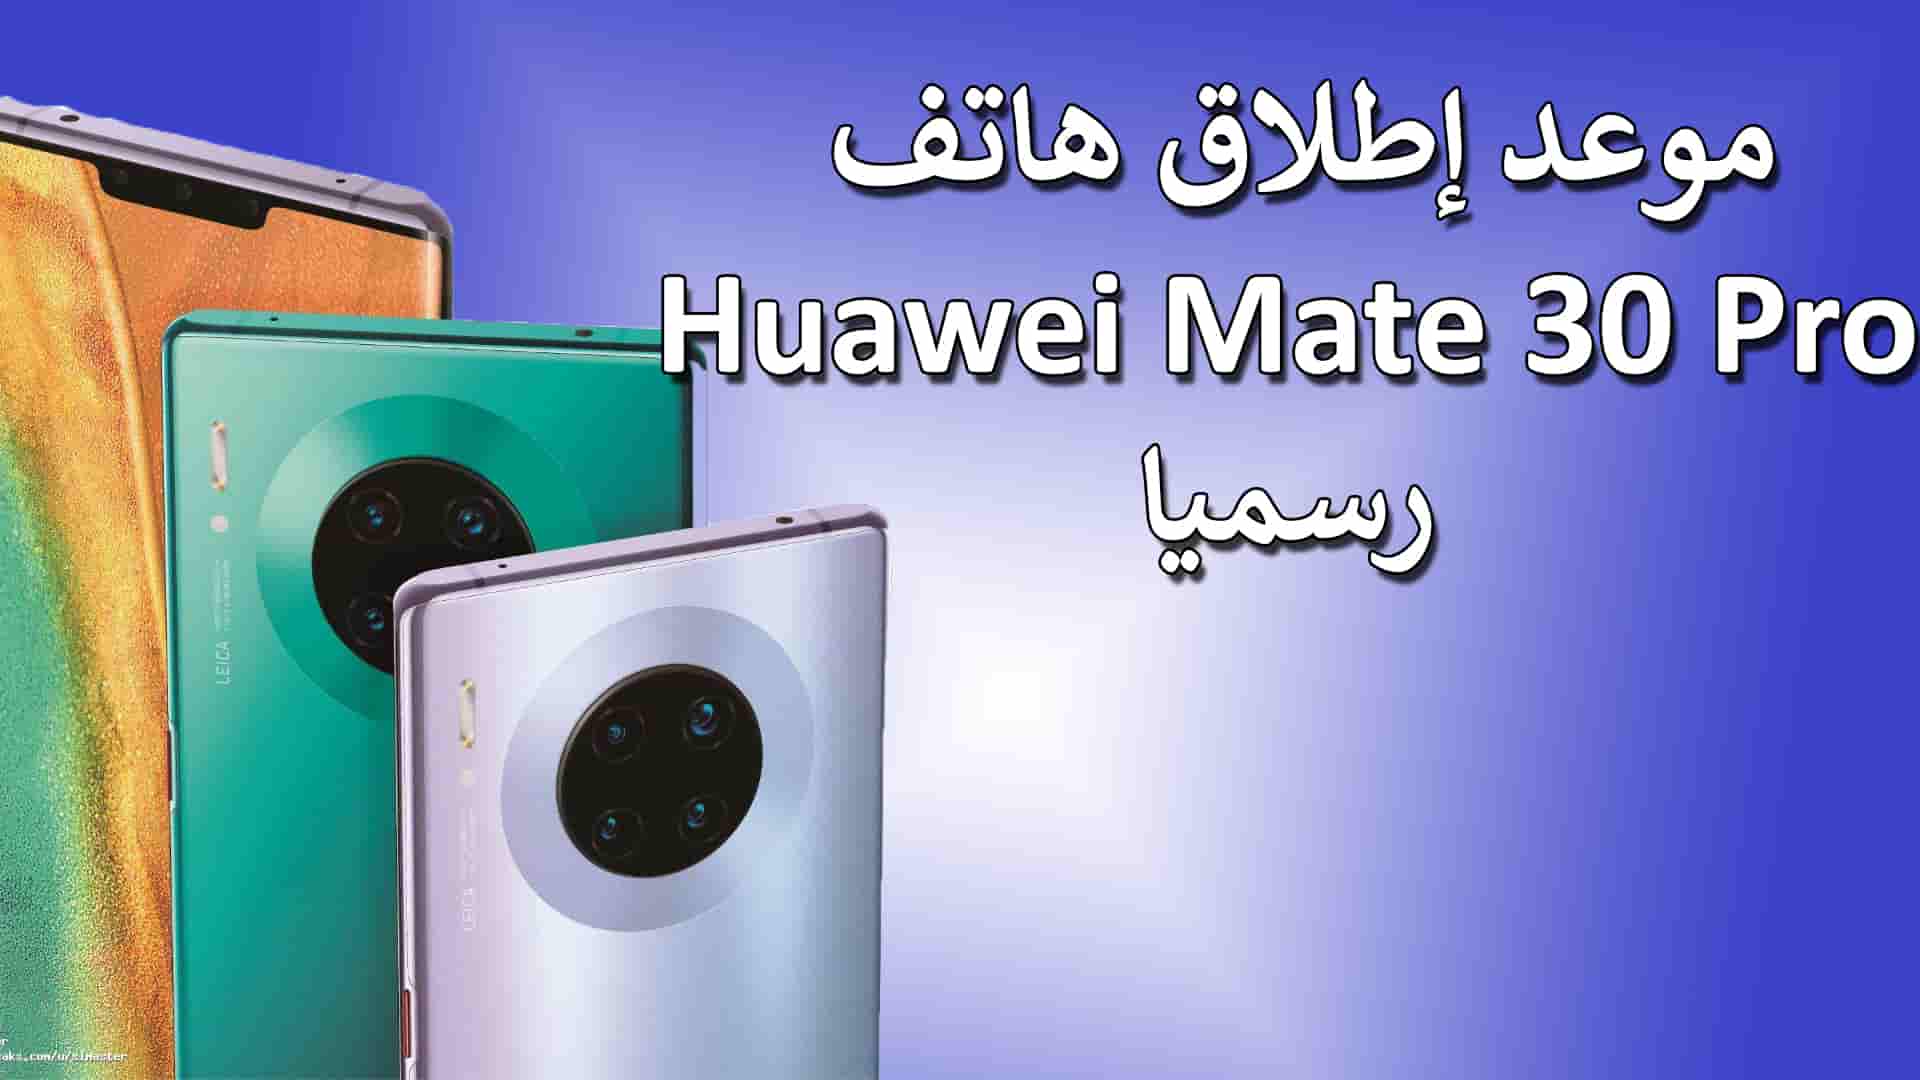 إعلان موعد إطلاق هاتف Huawei Mate 30 رسميا